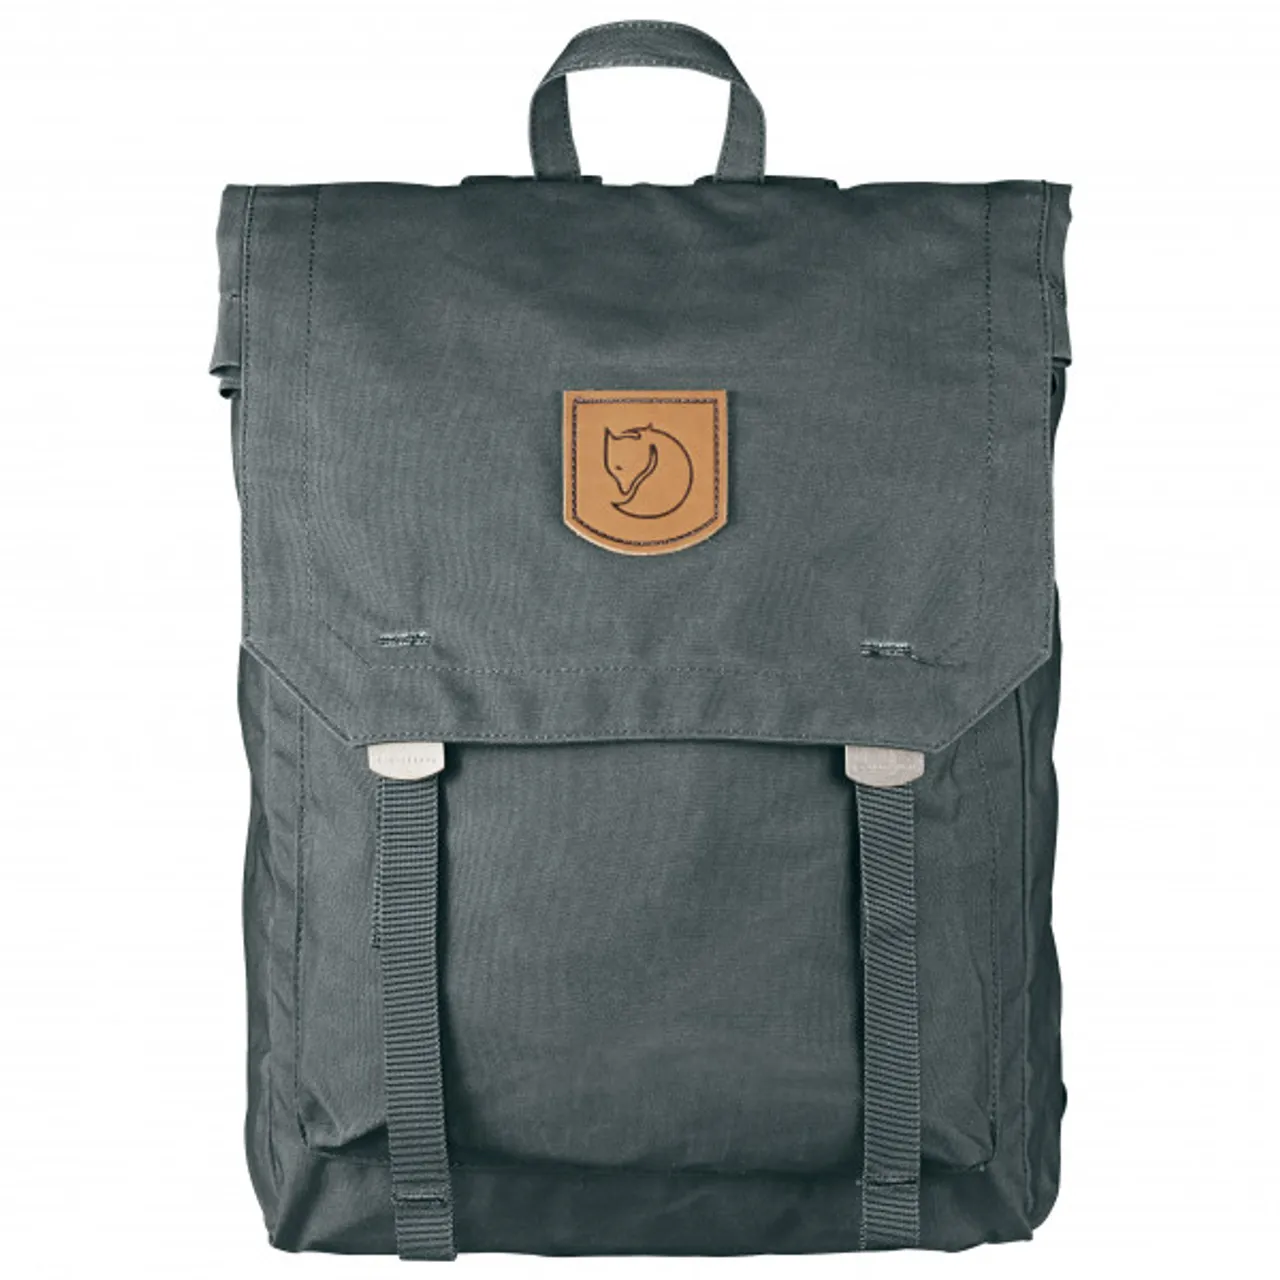 Fjällräven - Foldsack No.1 - Daypack size 16 l, grey